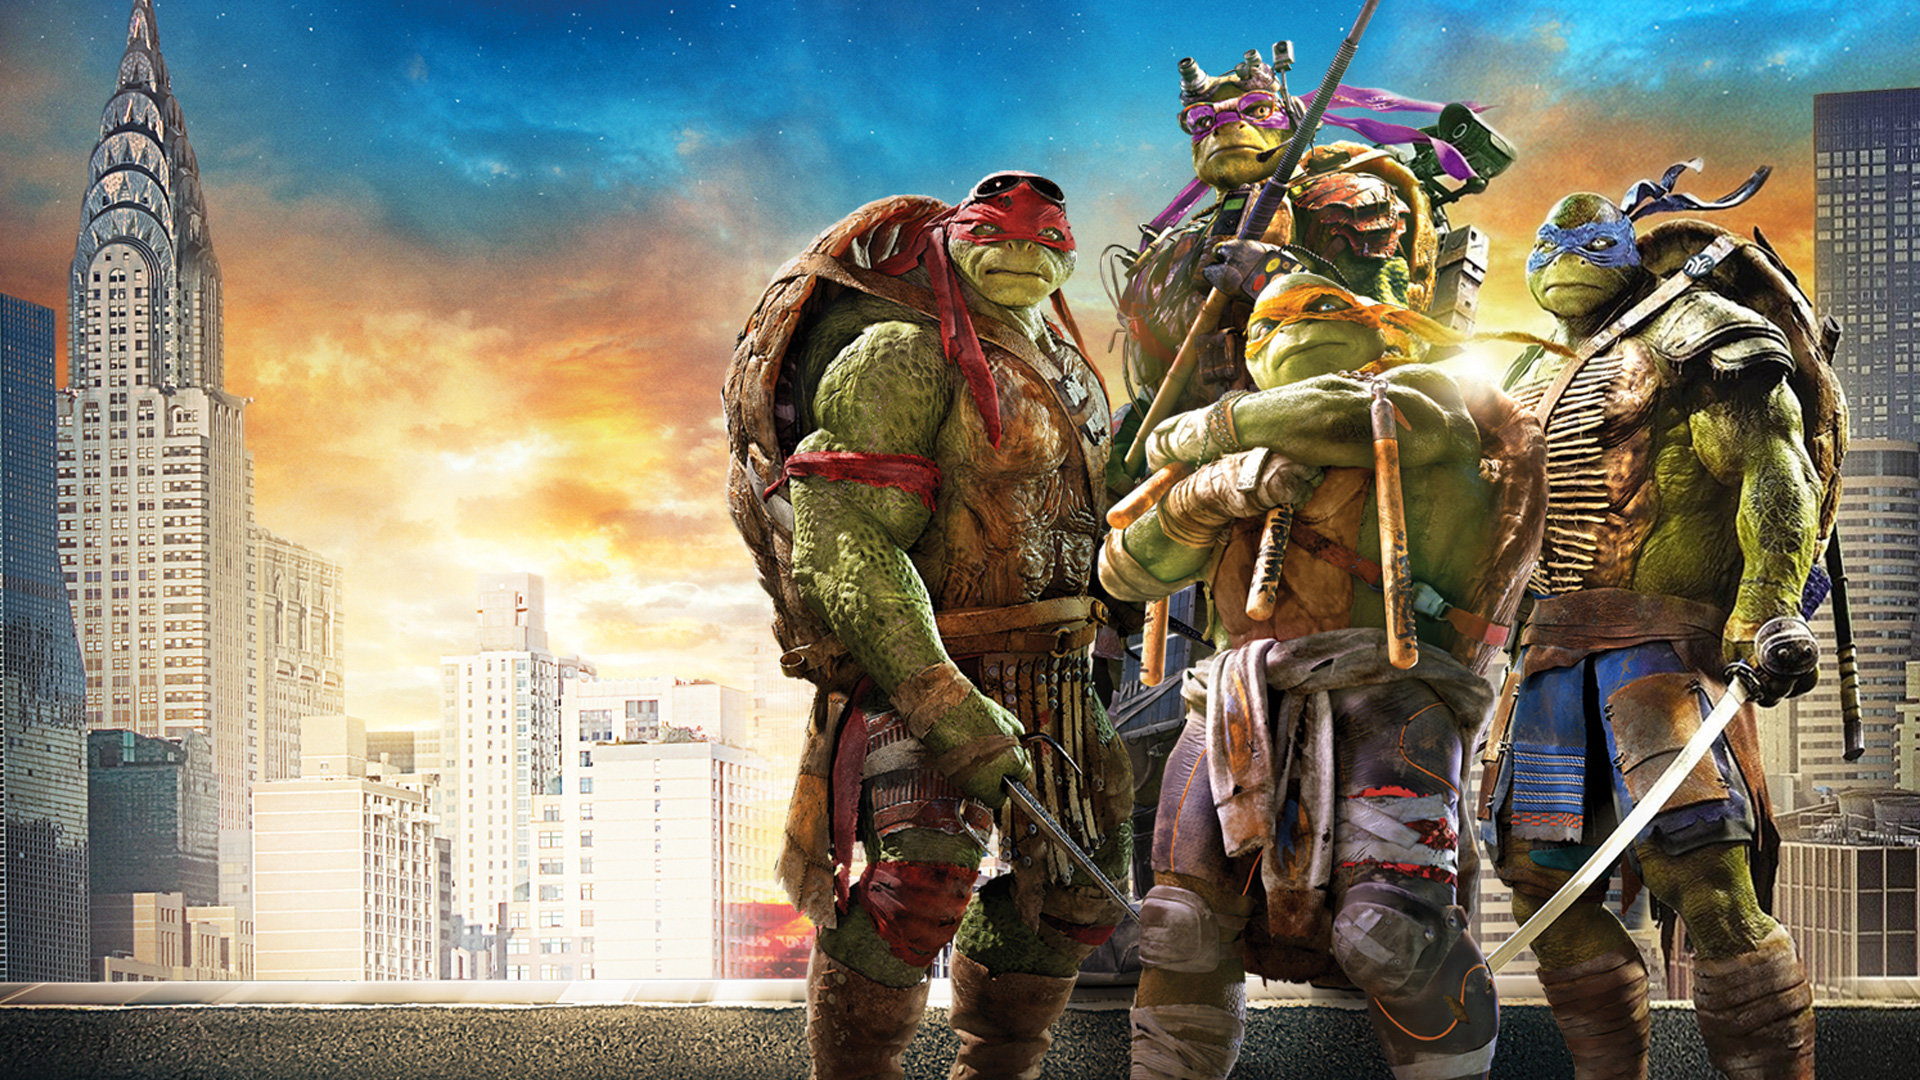 Best Teenage Mutant Ninja Turtles (2014) TMNT movie background ID:234203 for High Resolution full hd 1080p PC